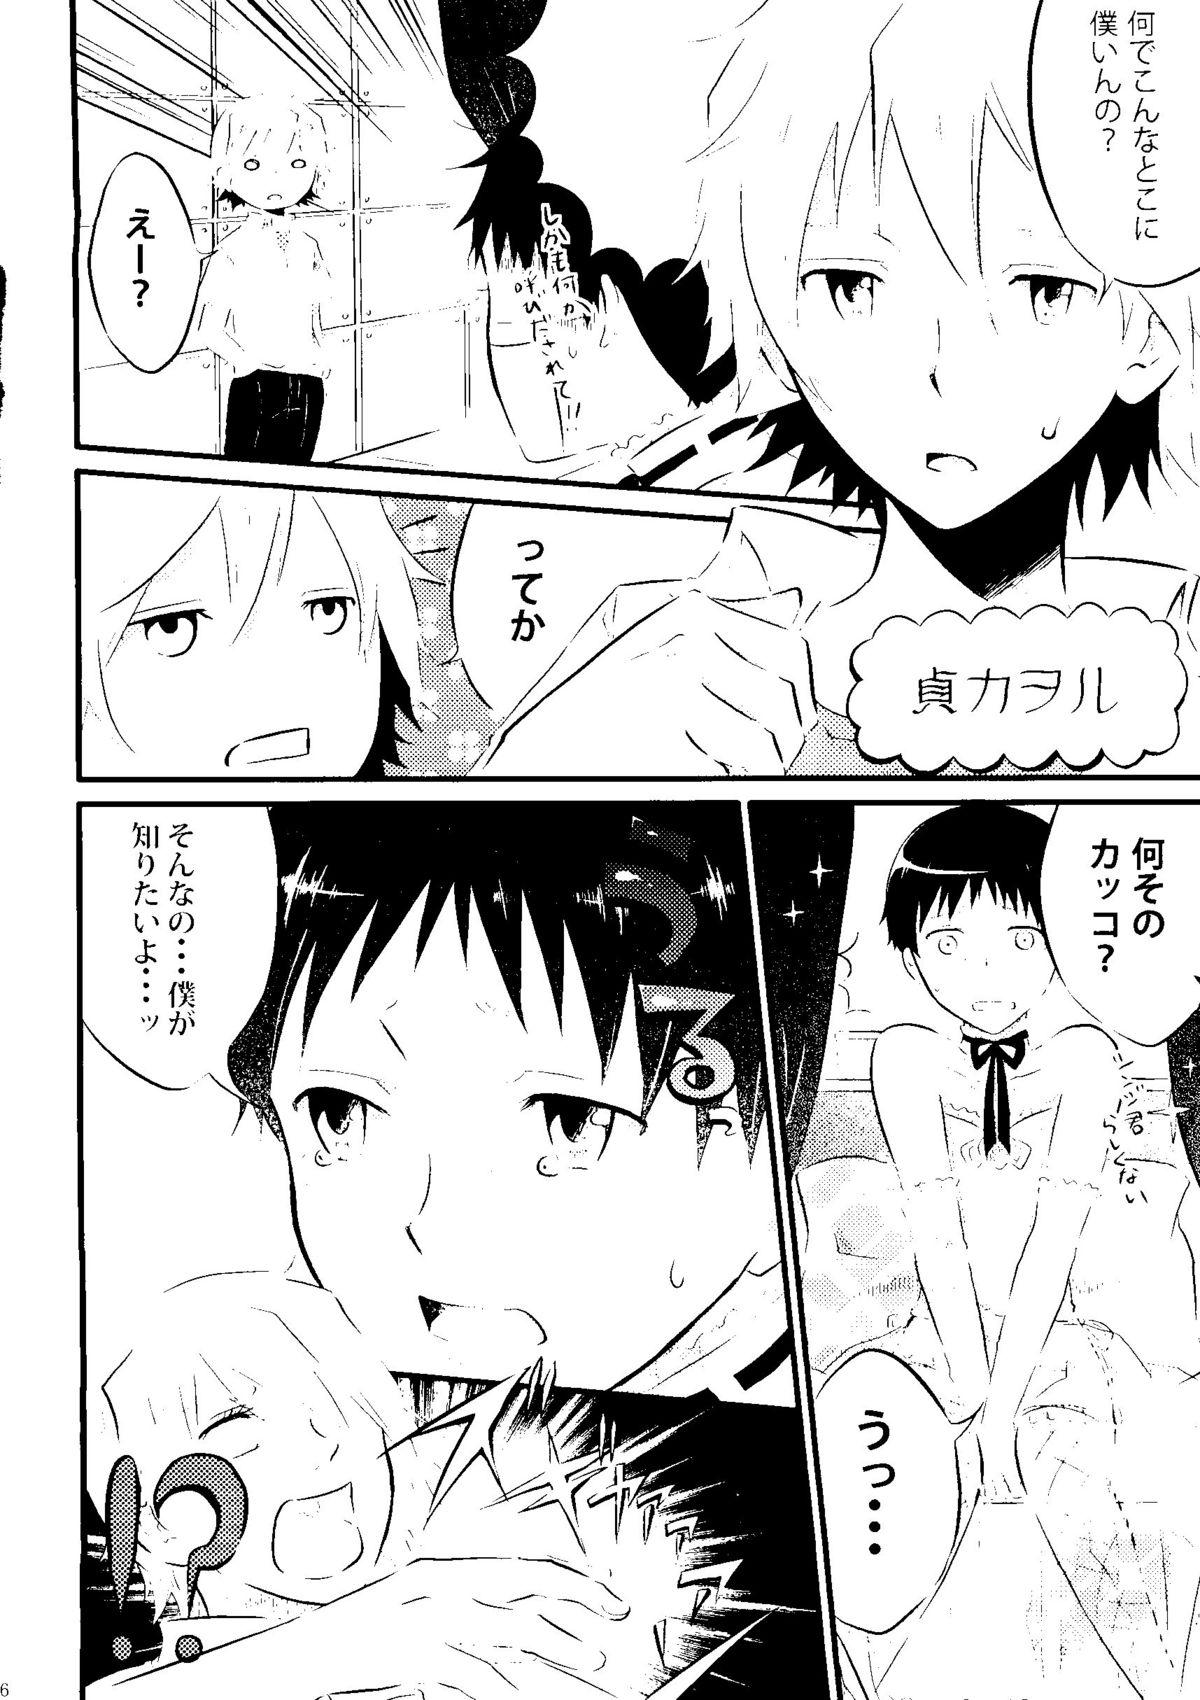 Gets Nakayoshi Children - Neon genesis evangelion Amateur Sex - Page 6